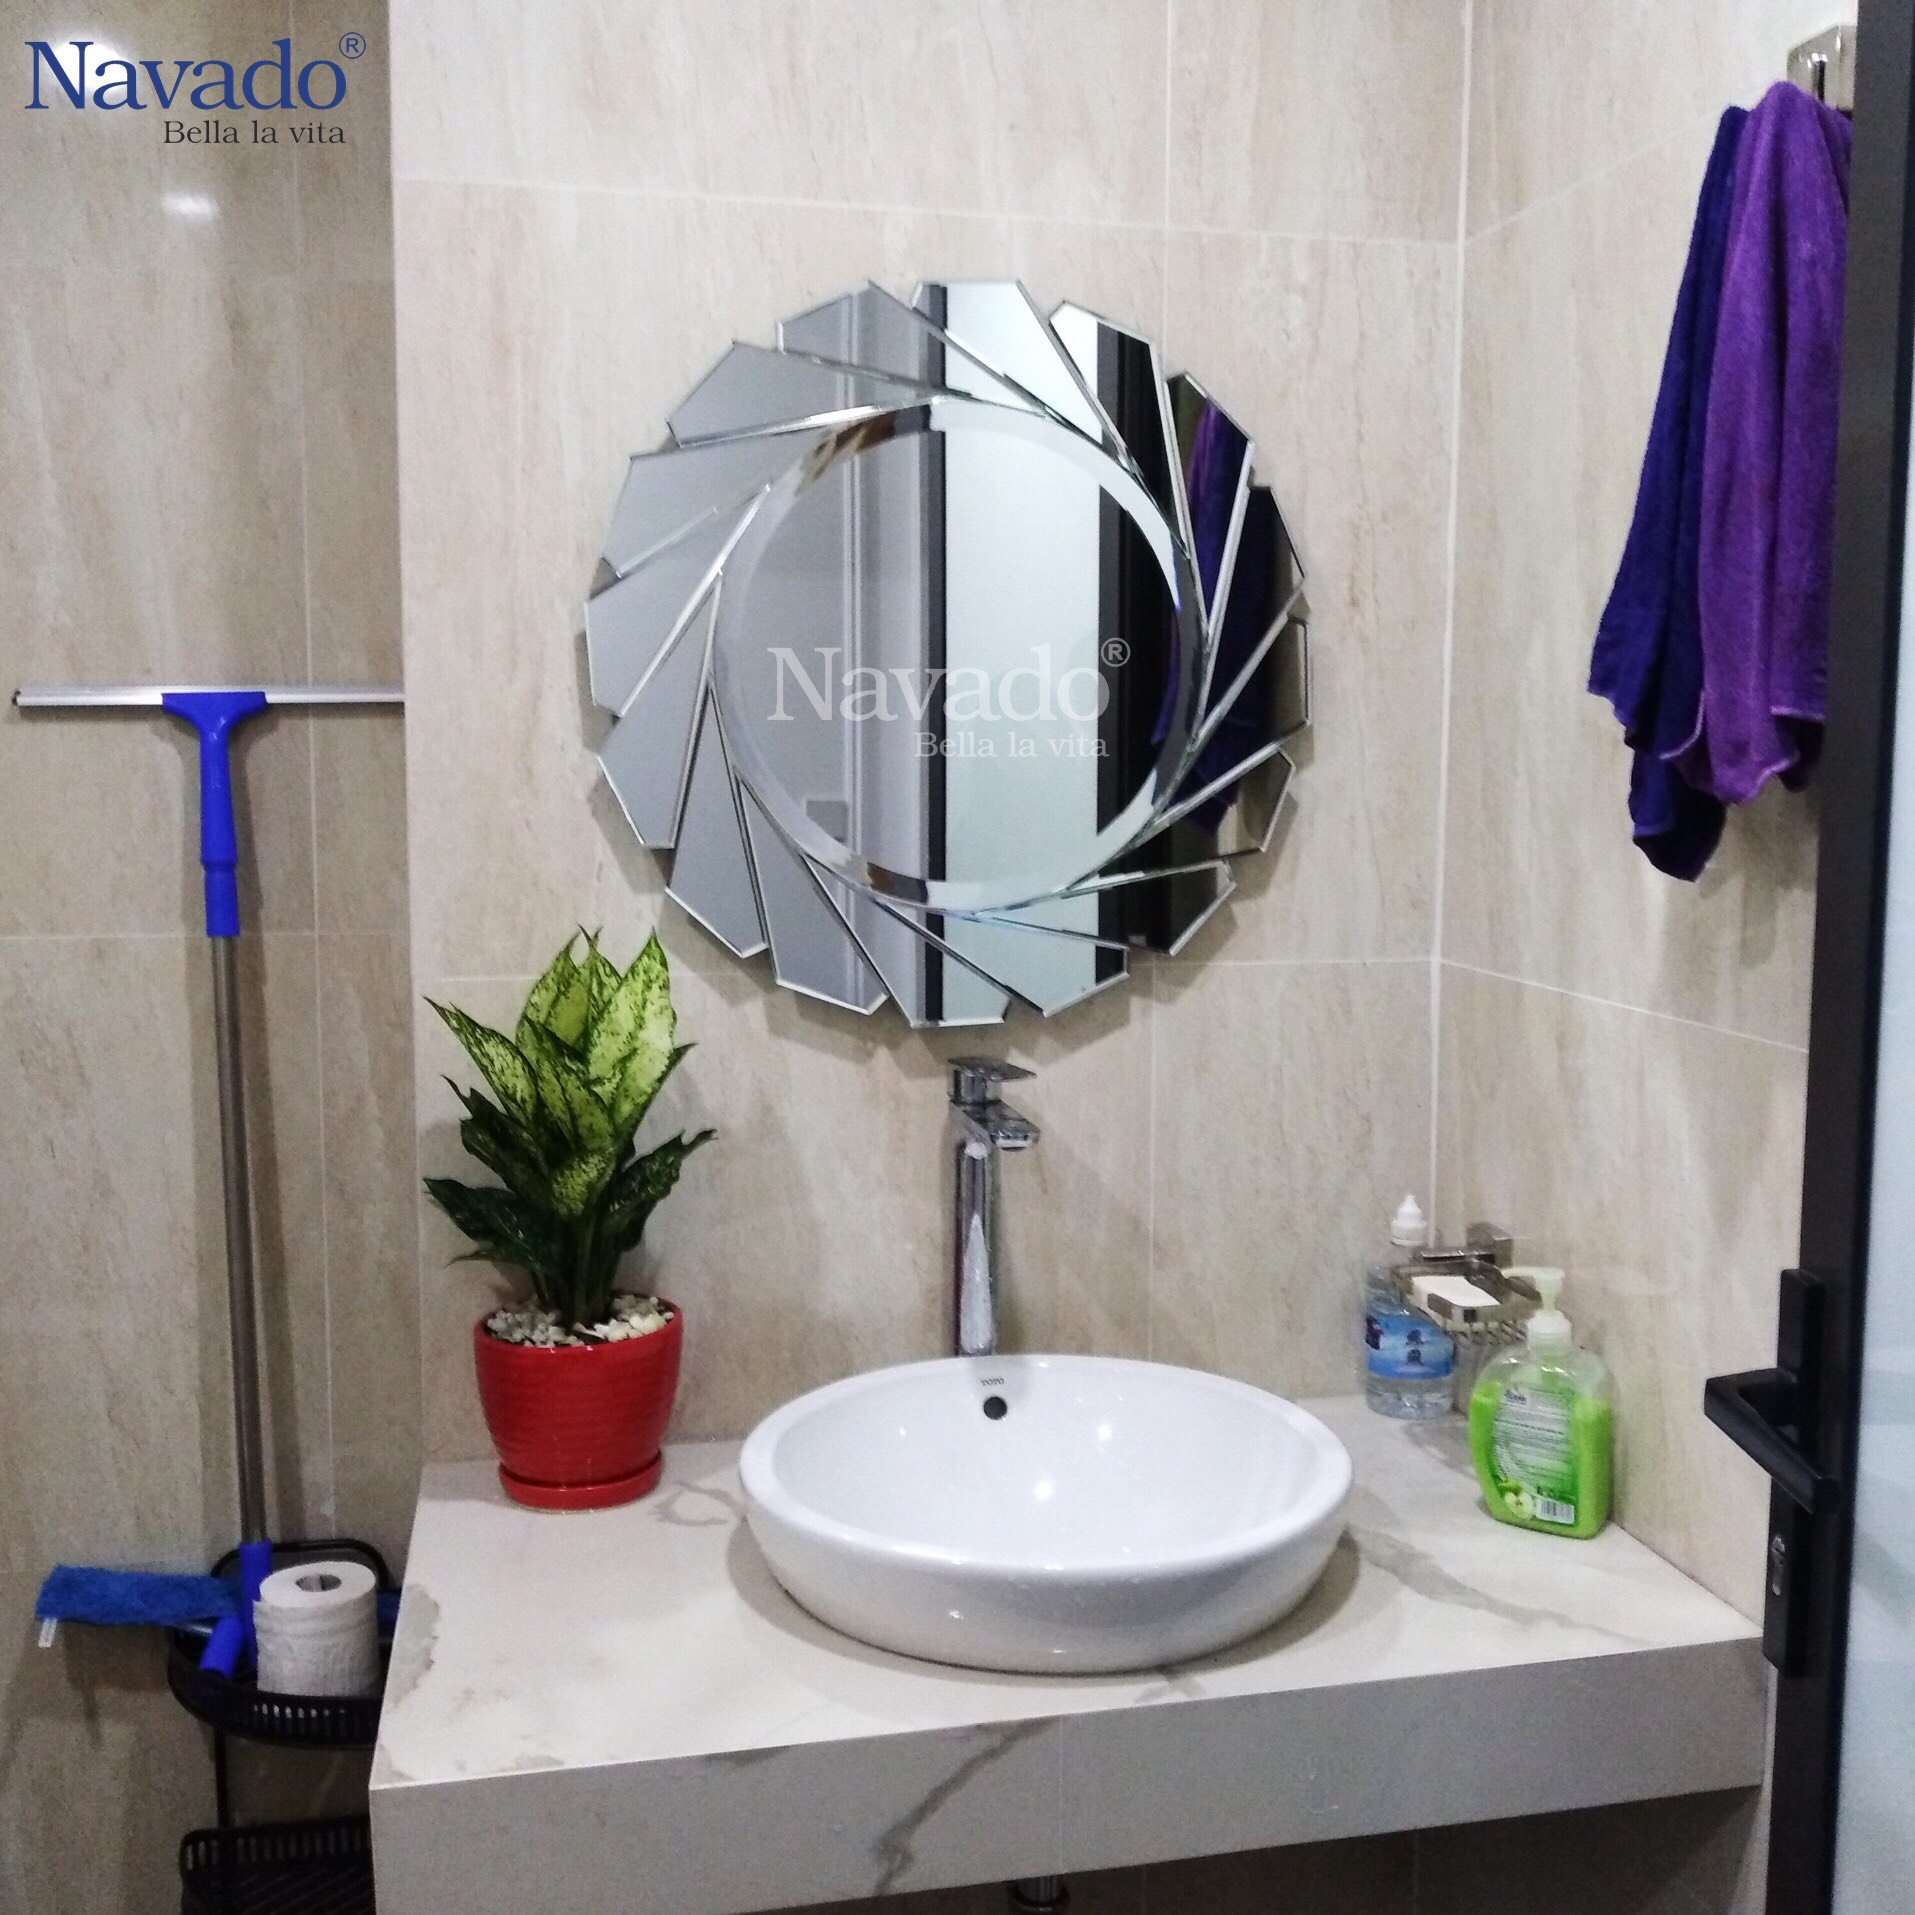 Nếu bạn đang tìm kiếm một lựa chọn mới lạ và đầy thú vị cho phòng tắm của mình, thì hãy khám phá bộ sưu tập gương phòng tắm Navado